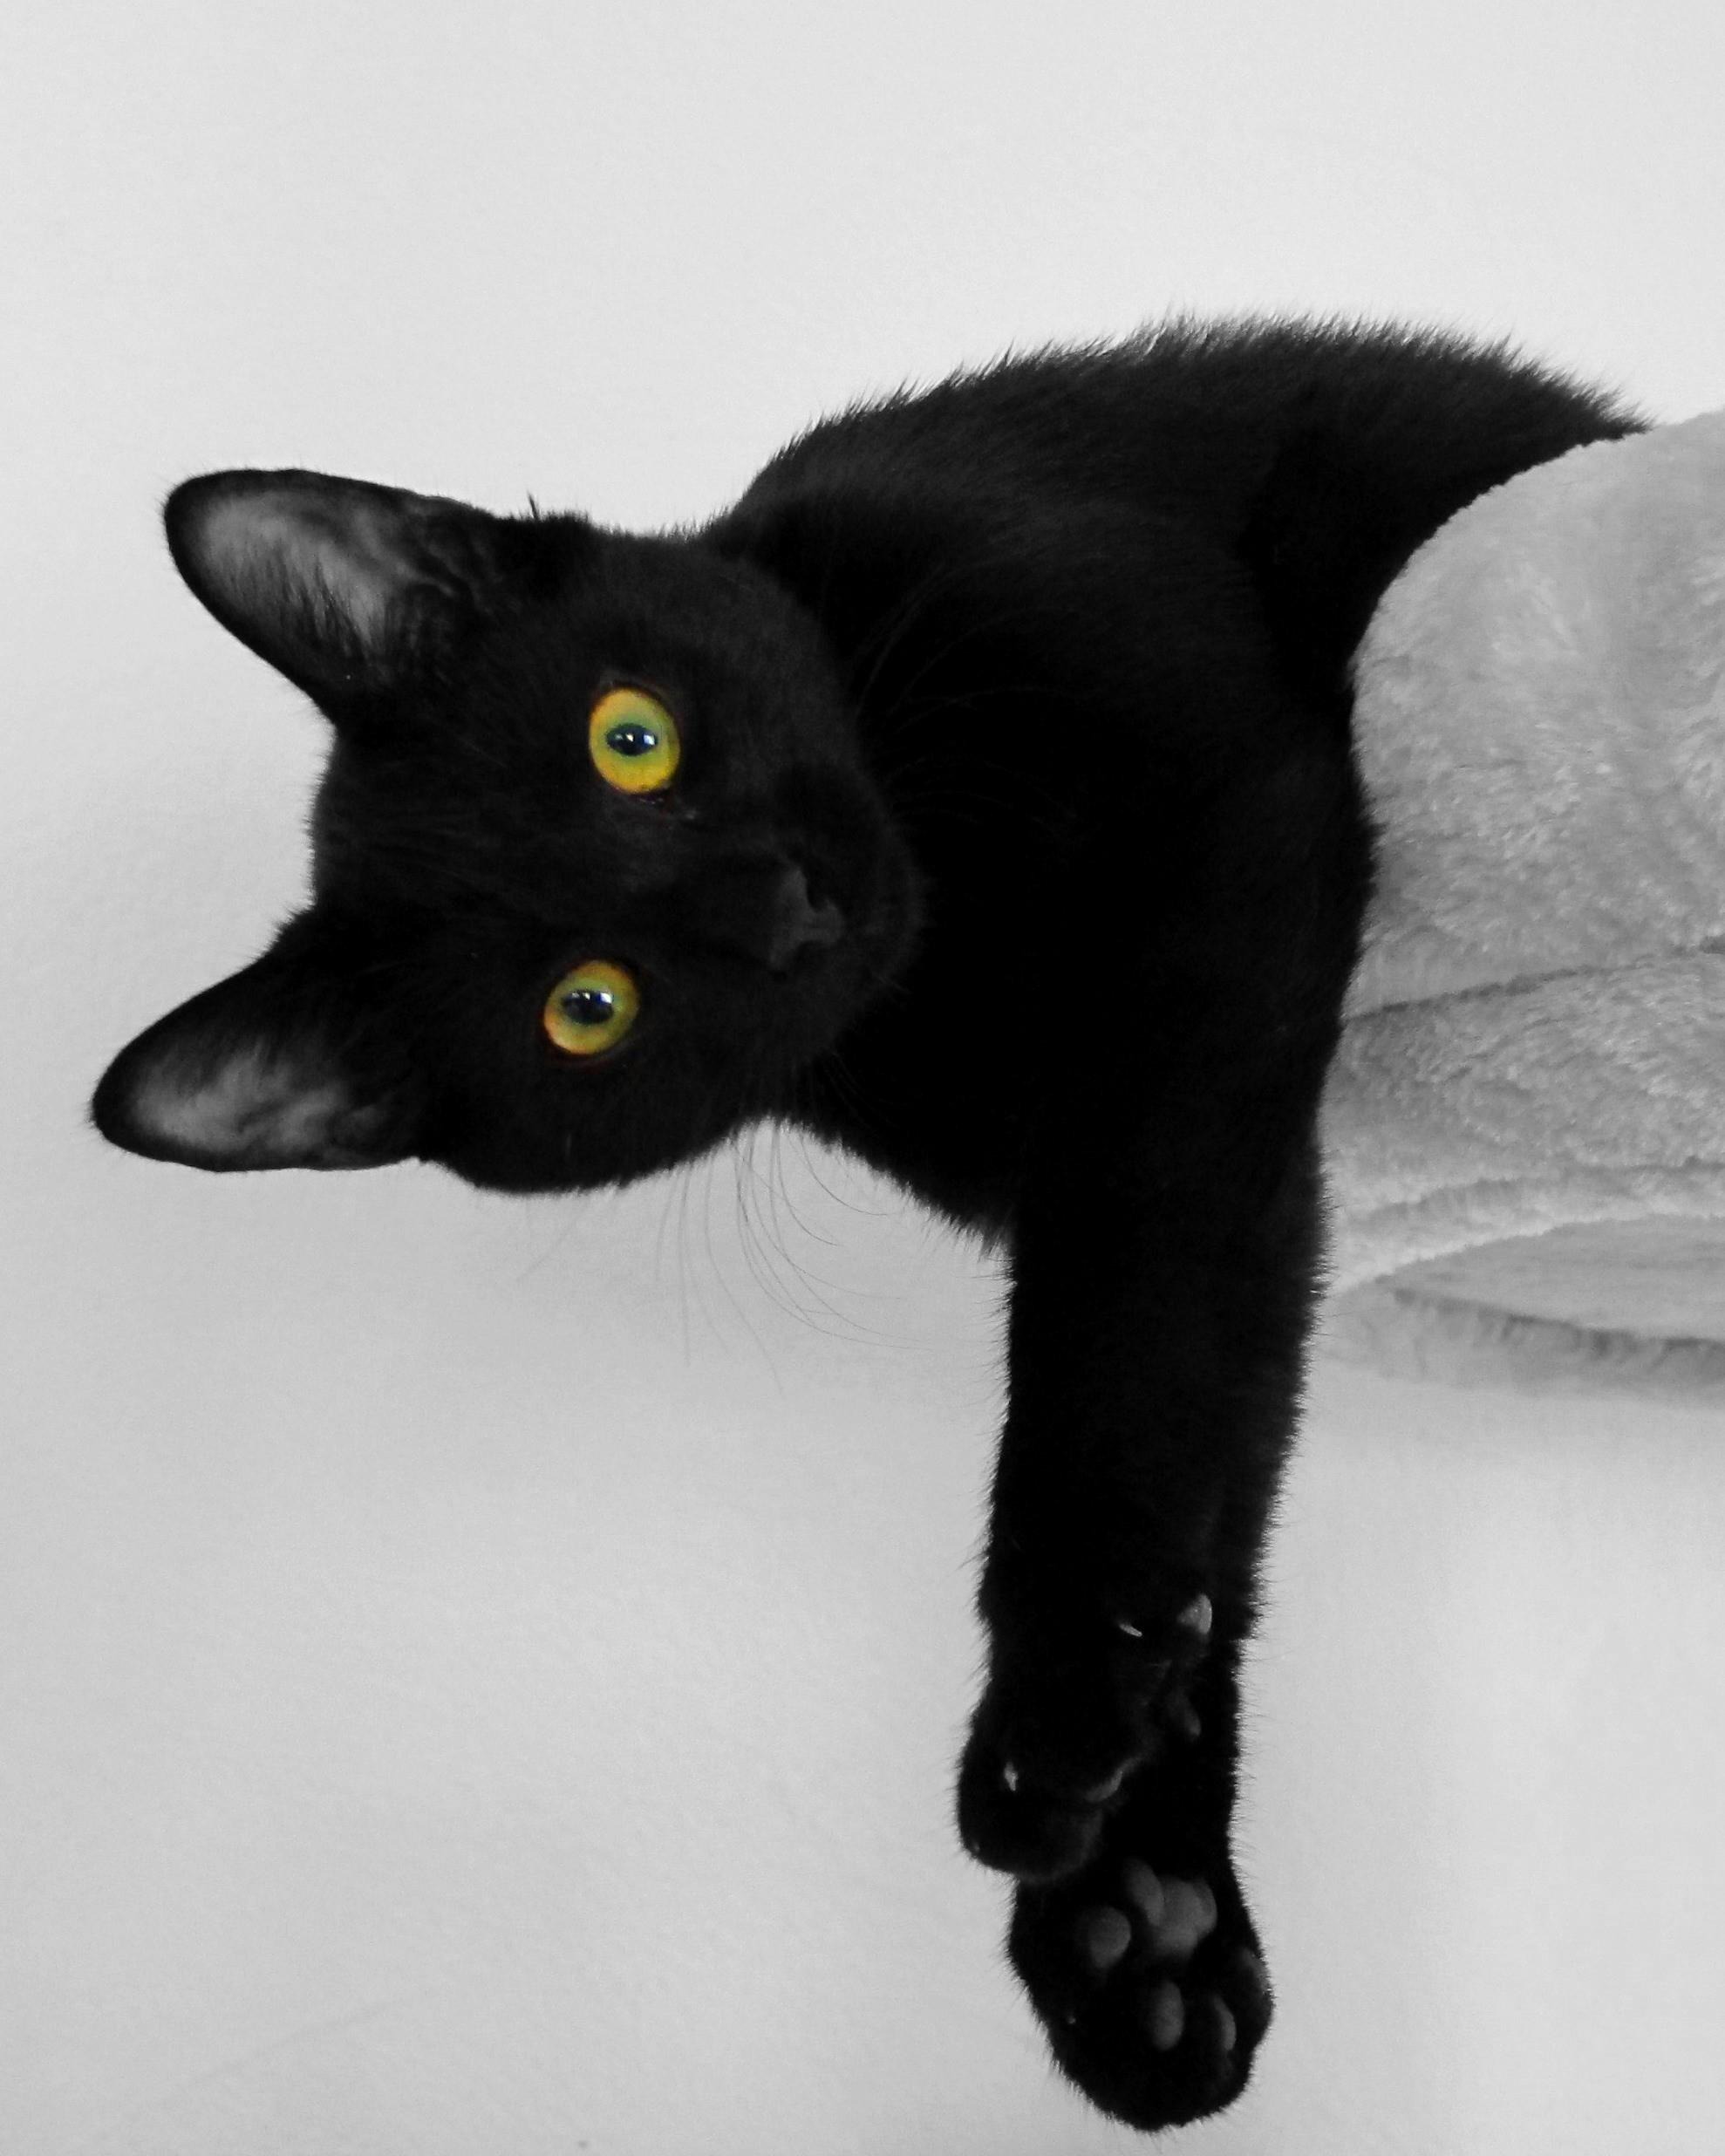 Ленивый черный кот на белом фоне · бесплатная фотография